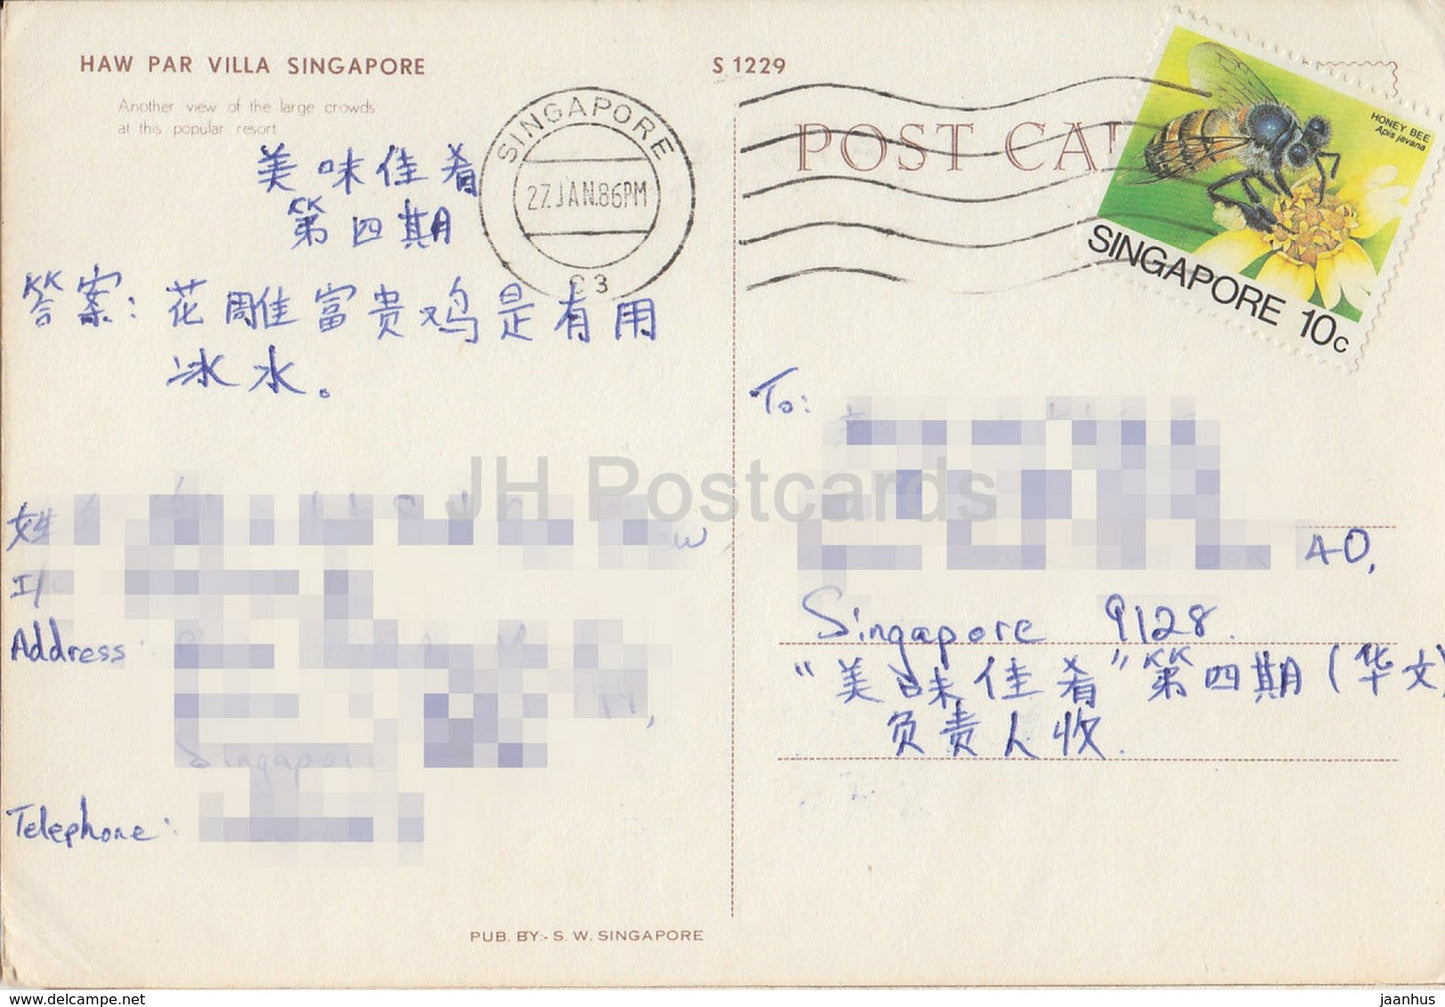 Singapore - Haw Par Villa - S 1229 - 1986 - Singapore - used